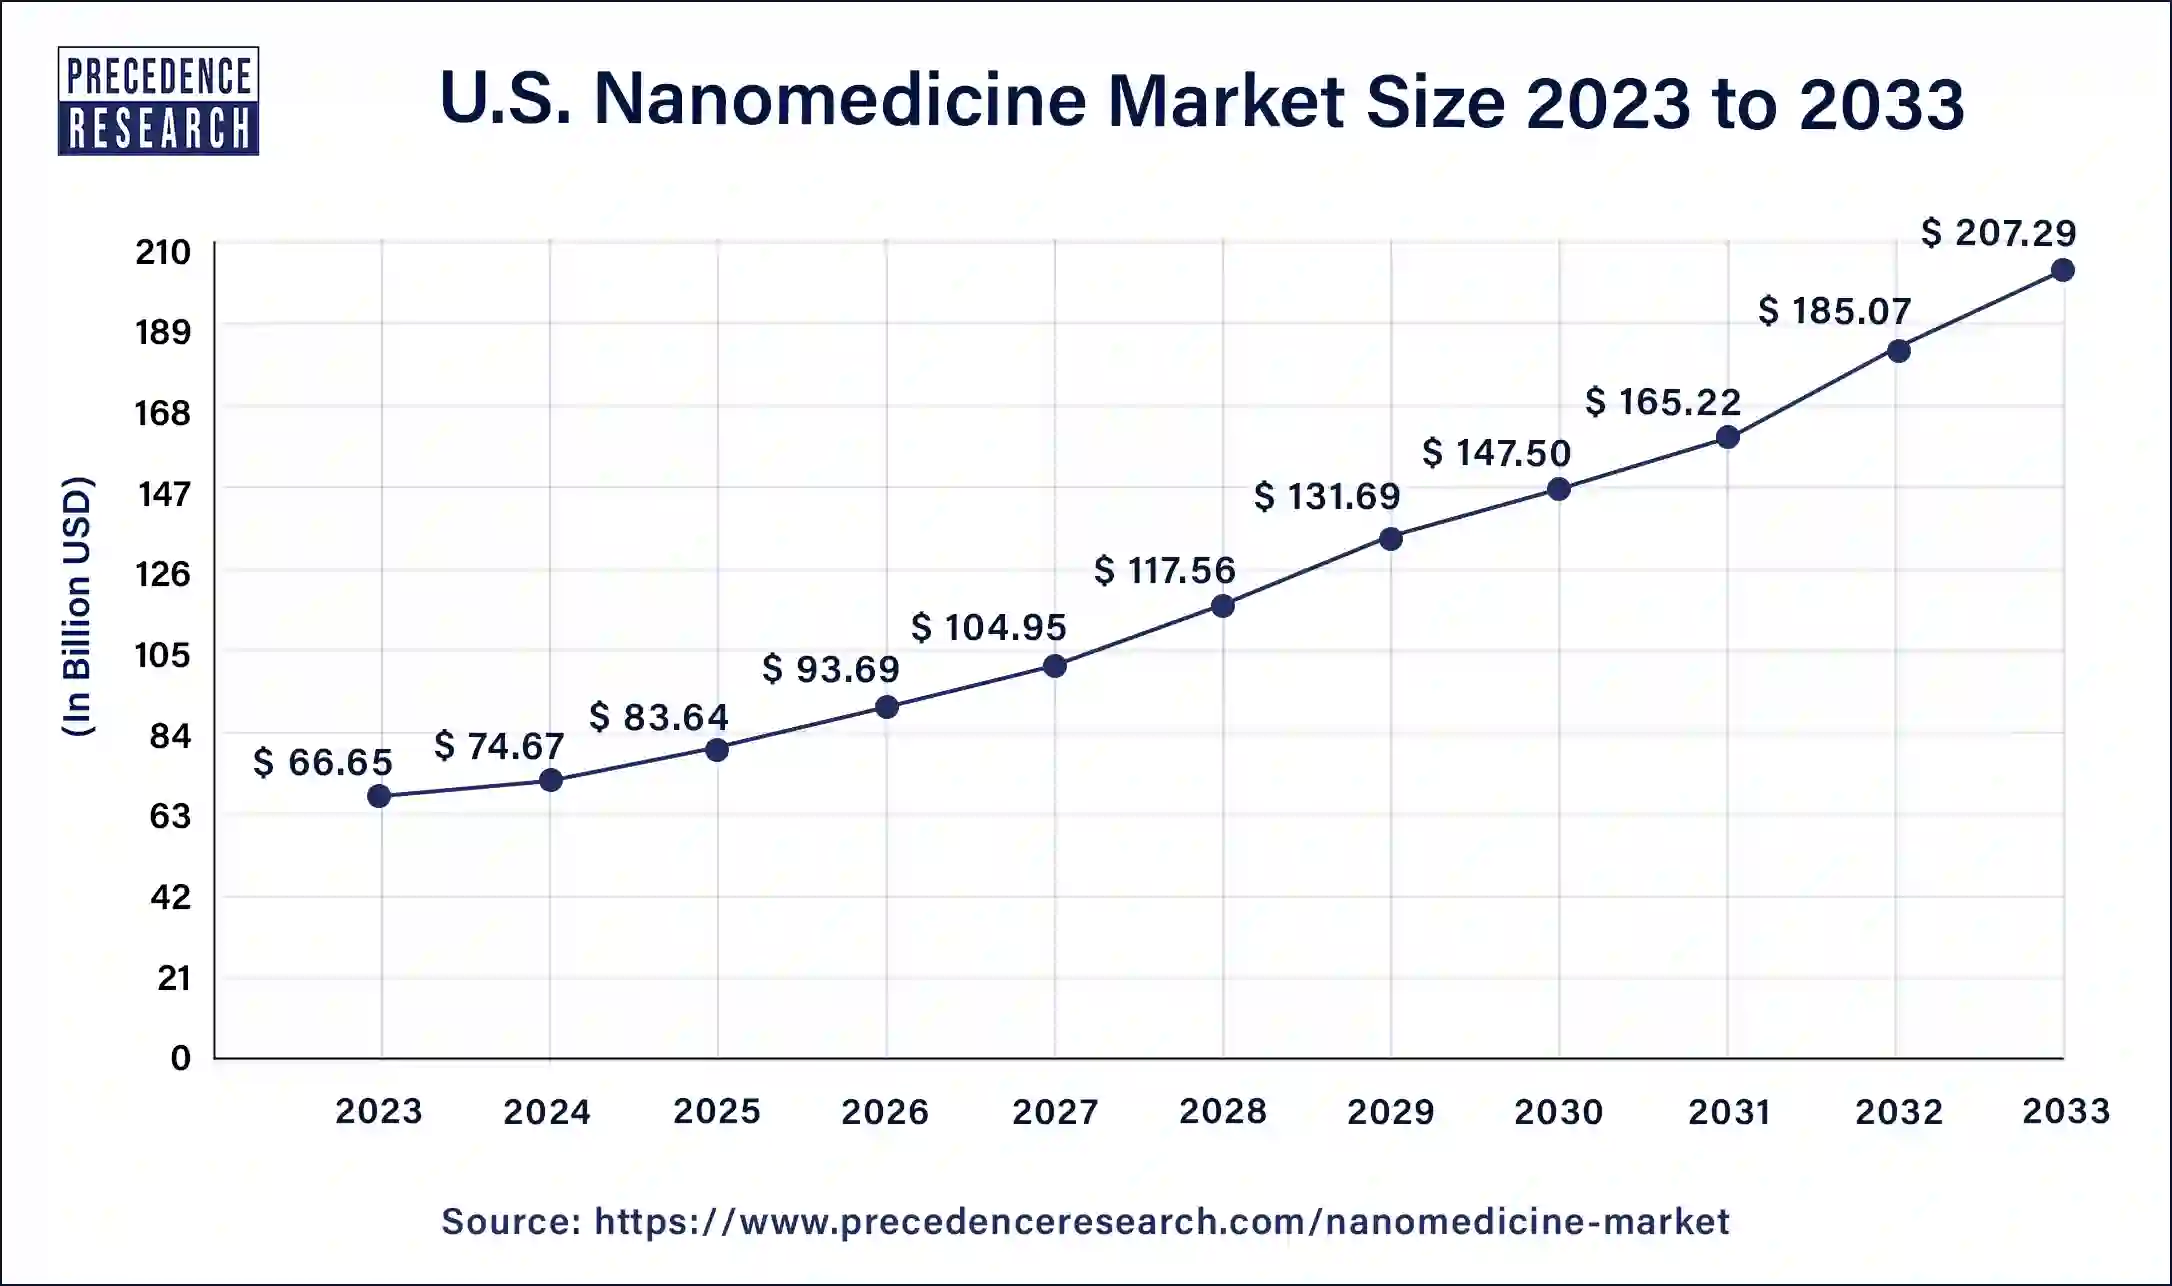 U.S. Nanomedicine Market Size 2024 to 2033